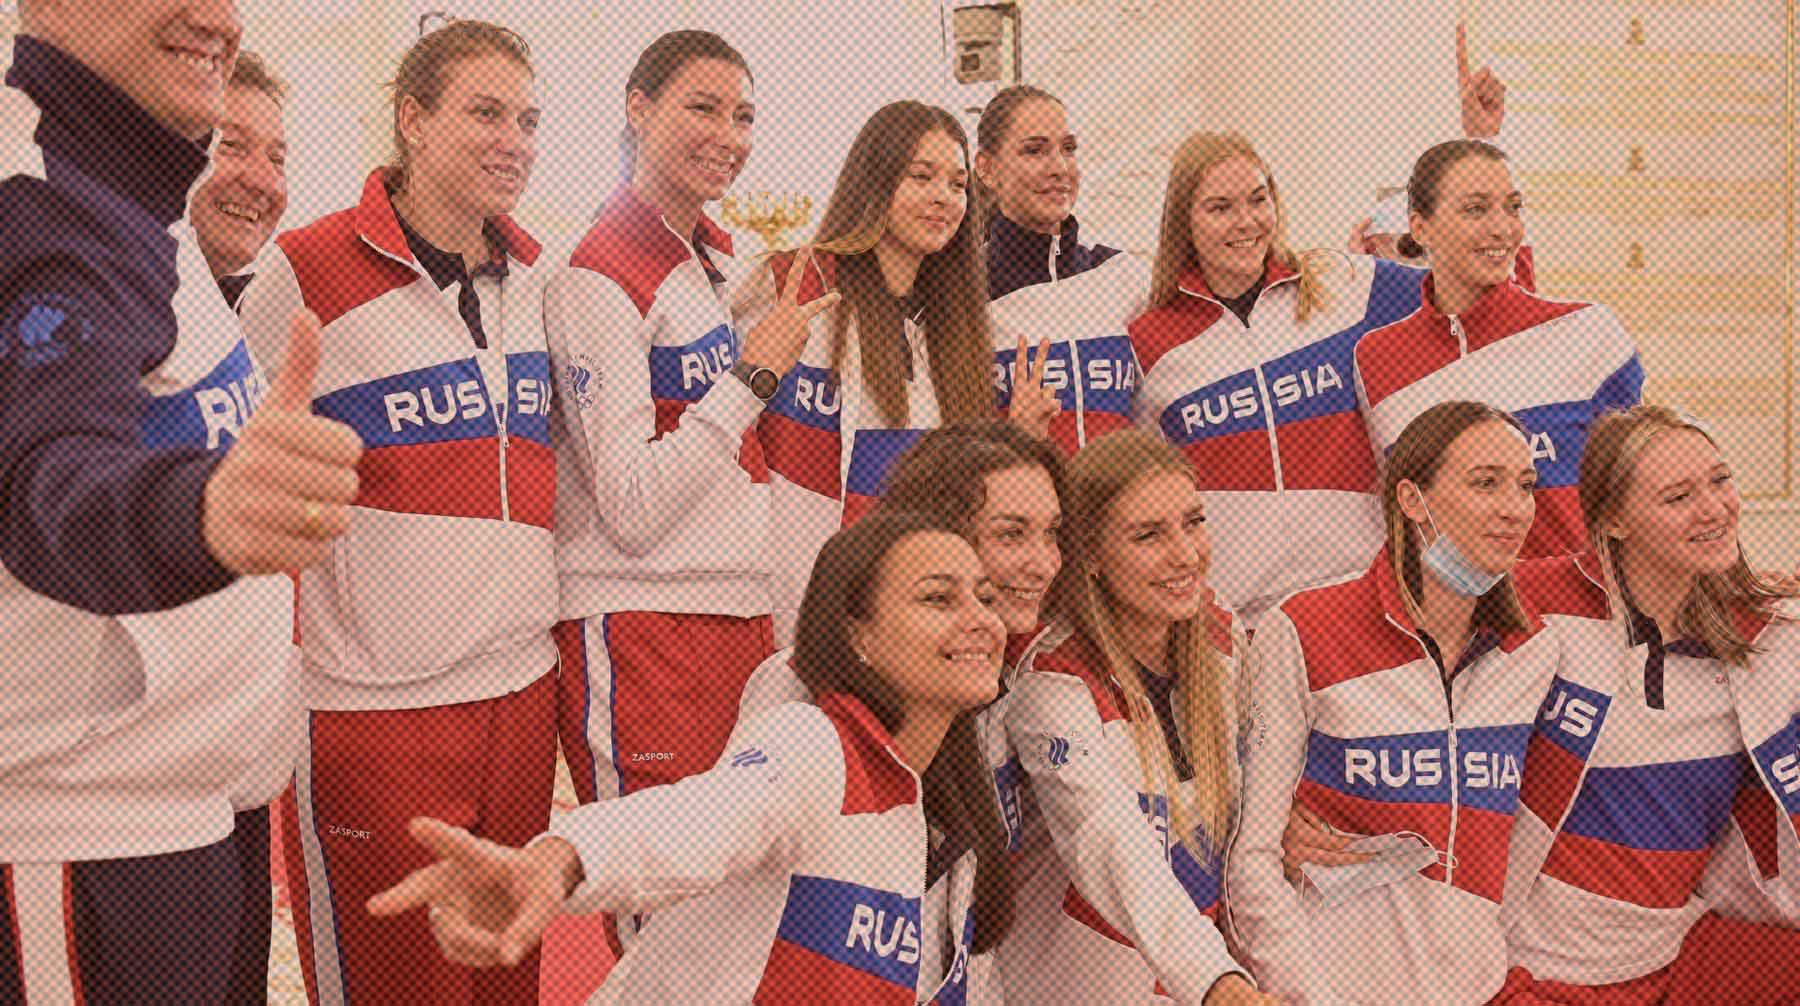 Dailystorm - «Впервые слышим»: в Комиссии спортсменов ОКР удивились сообщениям о памятке атлетам, как говорить о Крыме и харассменте